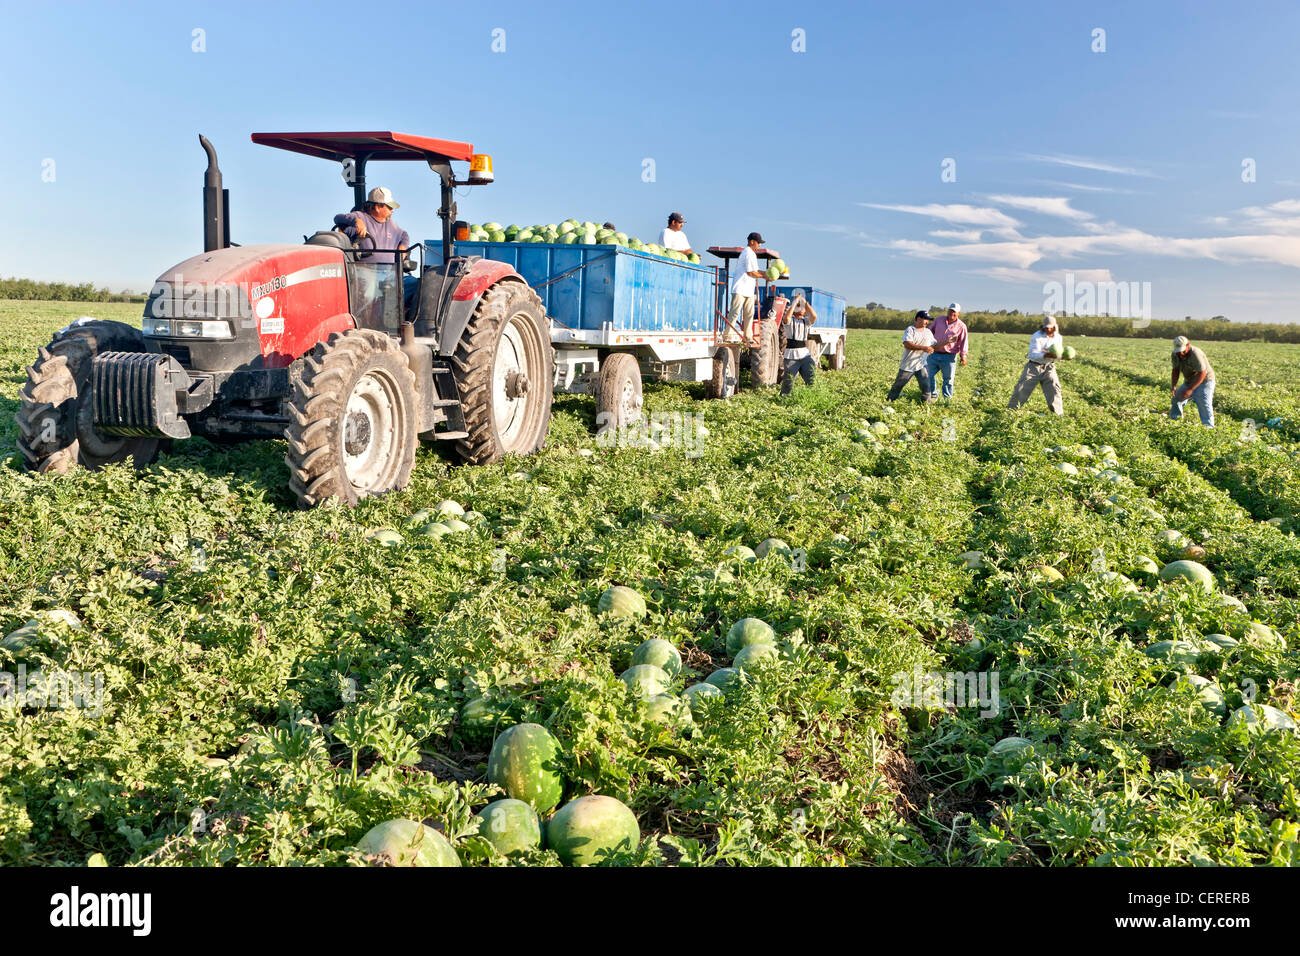 La récolte de pastèques, les travailleurs de la remorque de chargement. Banque D'Images